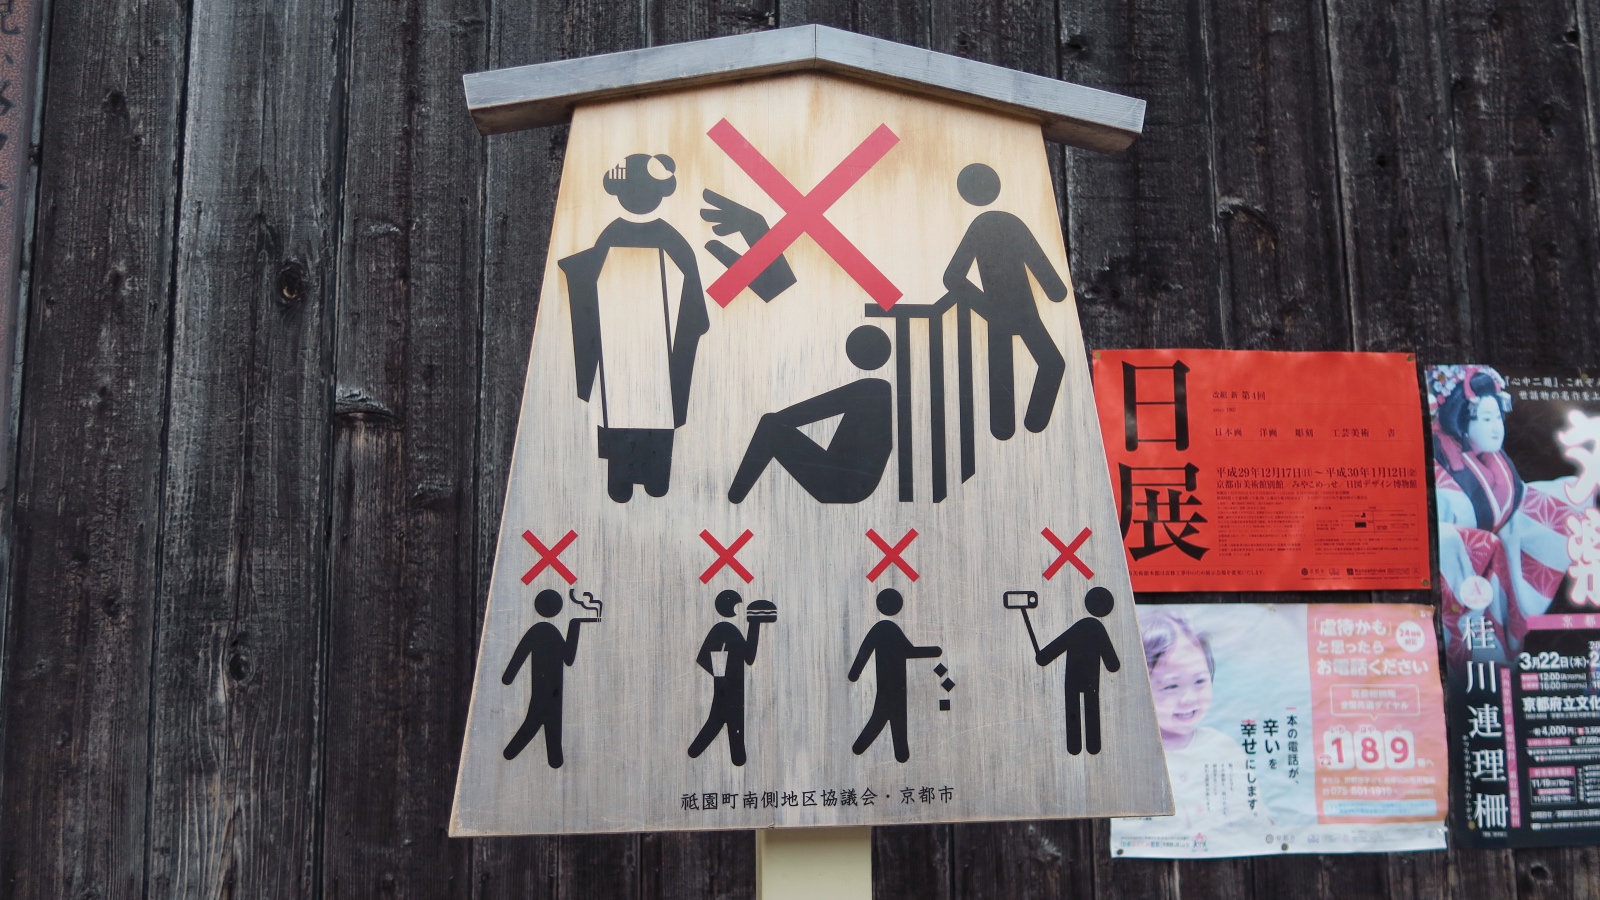 Die 5 unmissverständlichen Regeln von Gion.